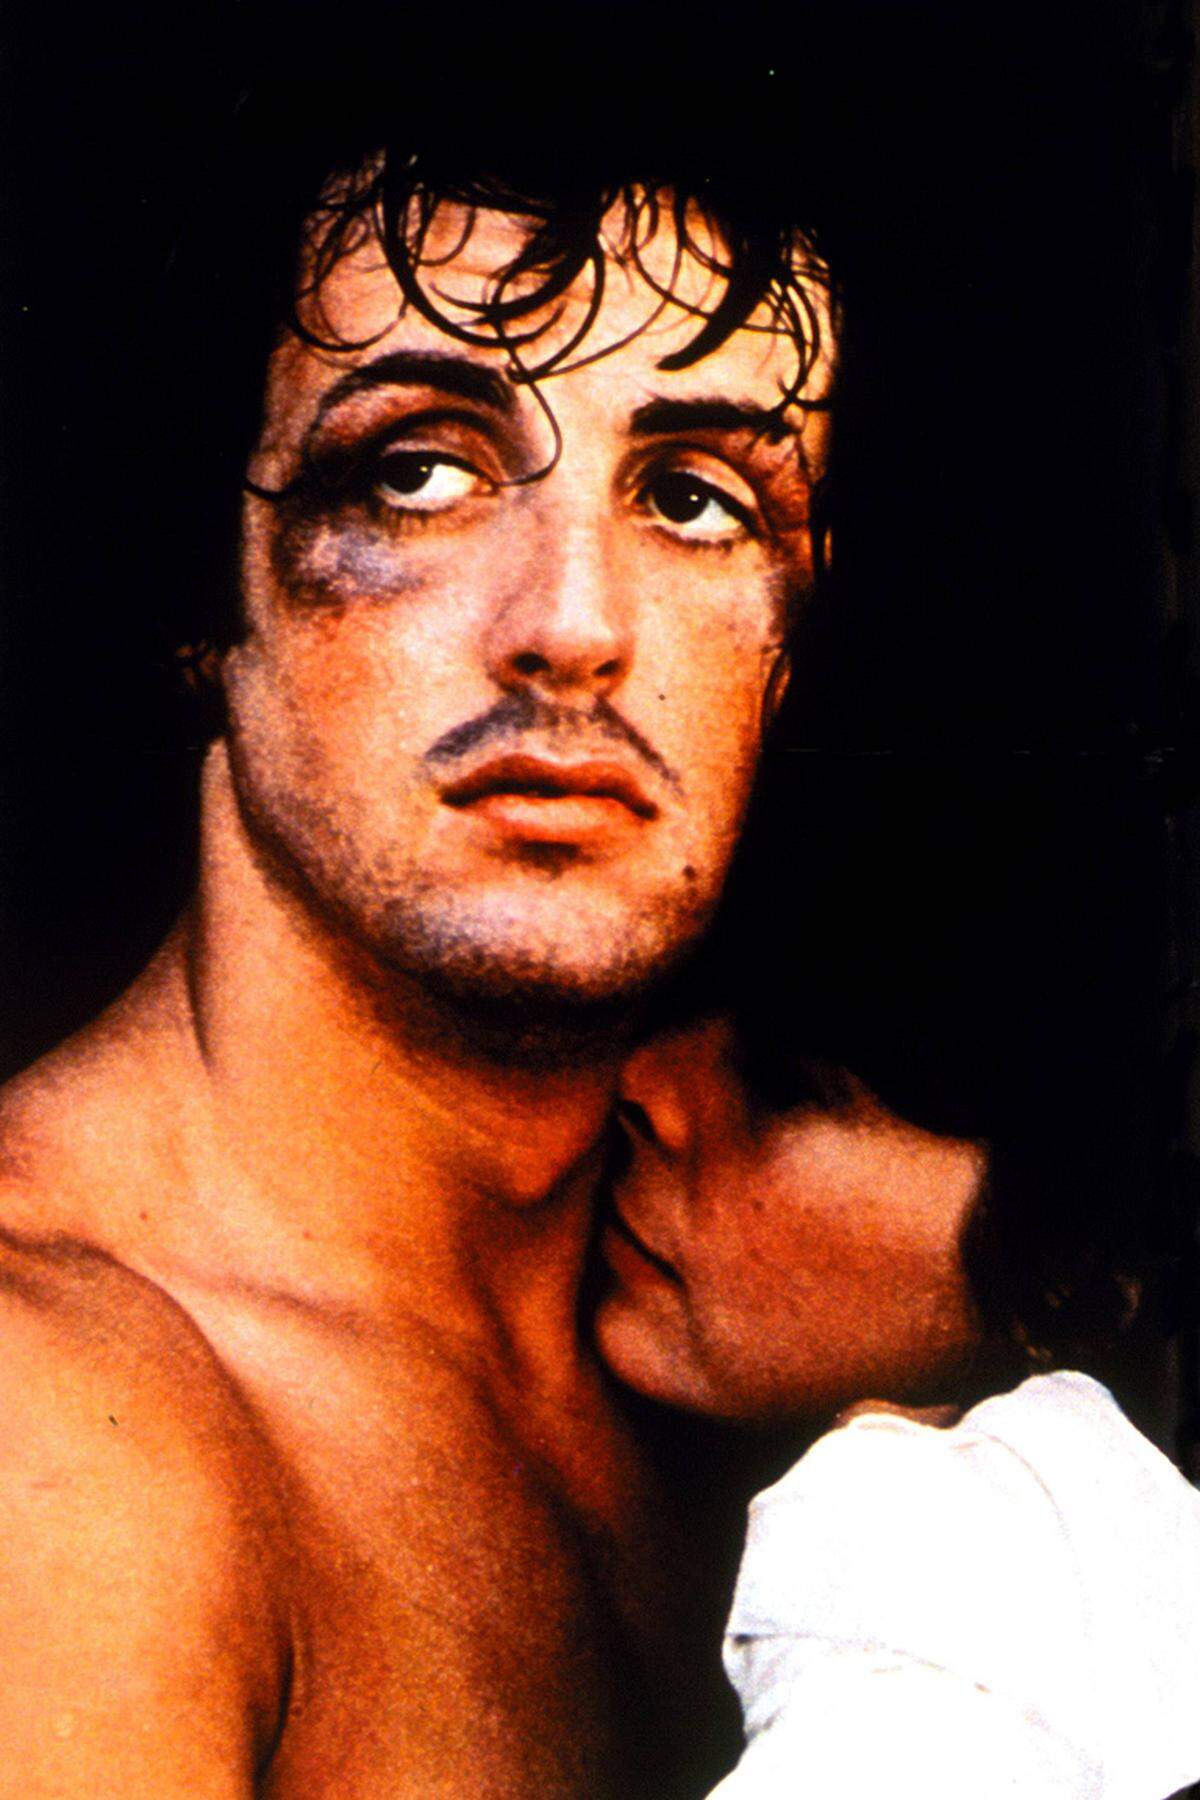 Seinen Durchbruch schaffte Stallone 1976 als Underdog-Boxer Rocky Balboa in "Rocky". Das Drehbuch zum Film - der insgesamt drei Oscars gewann - schrieb er selbst, von der schleppenden Schauspielkarriere gefrustet. "Rocky" wurde 1976 über Nacht zum Hit. Er holte zehn Oscar-Nominierungen und gewann drei Trophäen, für Regie, Schnitt und als bester Film. 